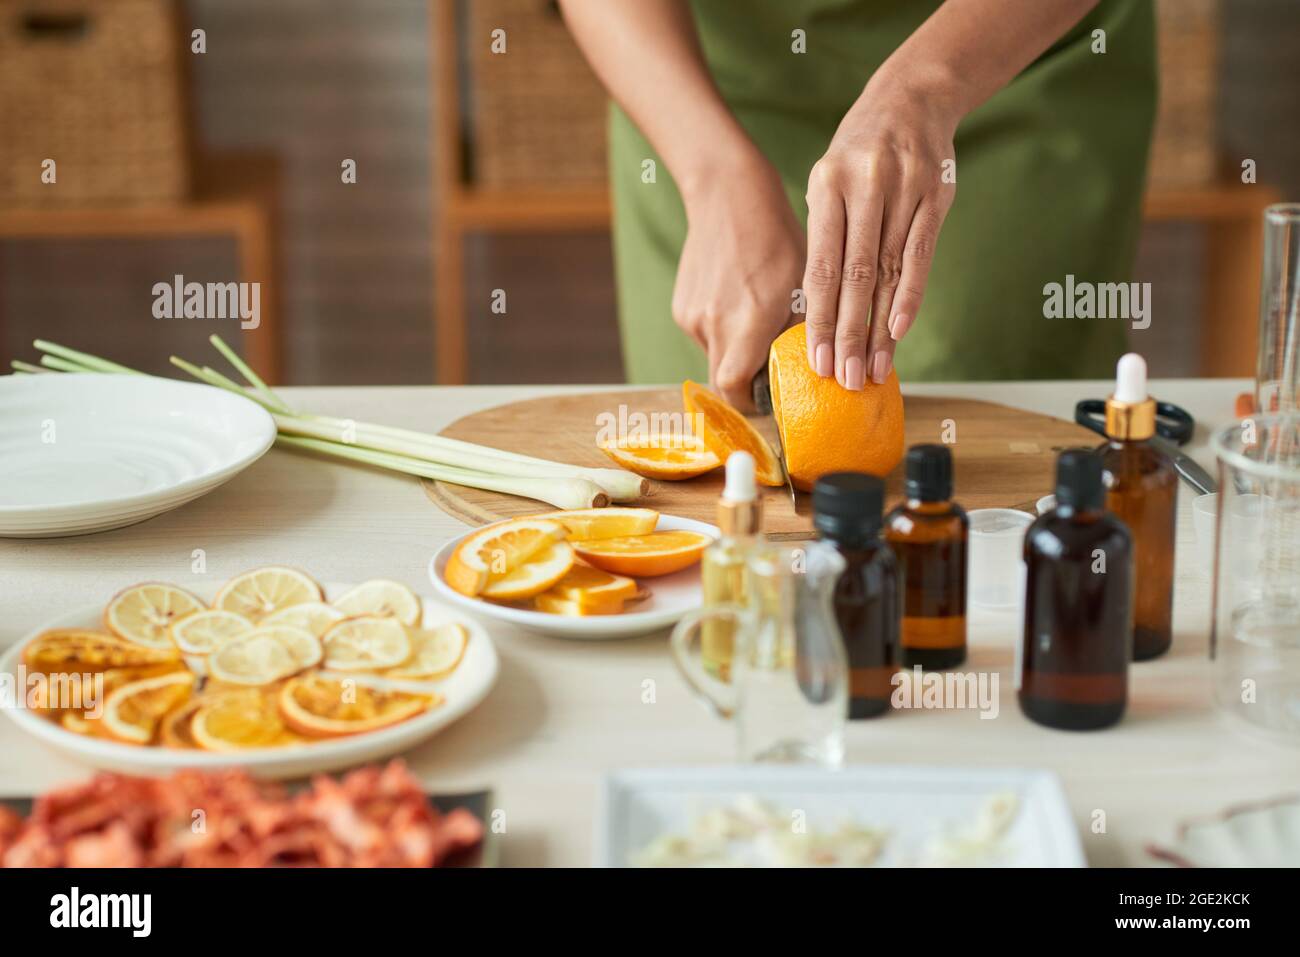 Nahaufnahme einer Frau in der Schürze, die orange wehn schneidet und dünne Scheiben für die Herstellung von oragnischer Seife vorstellt Stockfoto